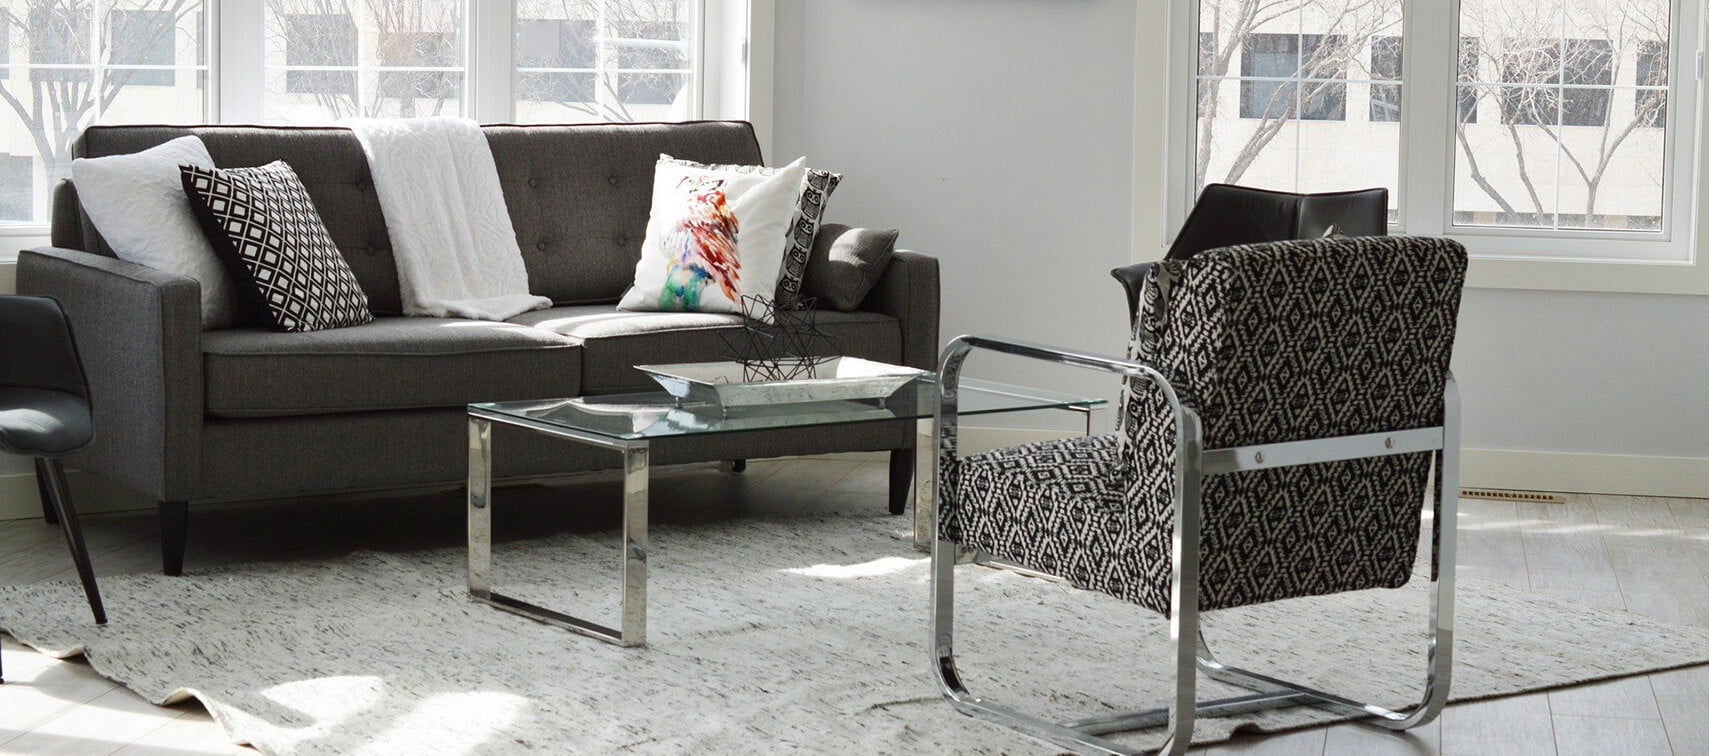 Salon moderne avec canapé et chaises en tissu